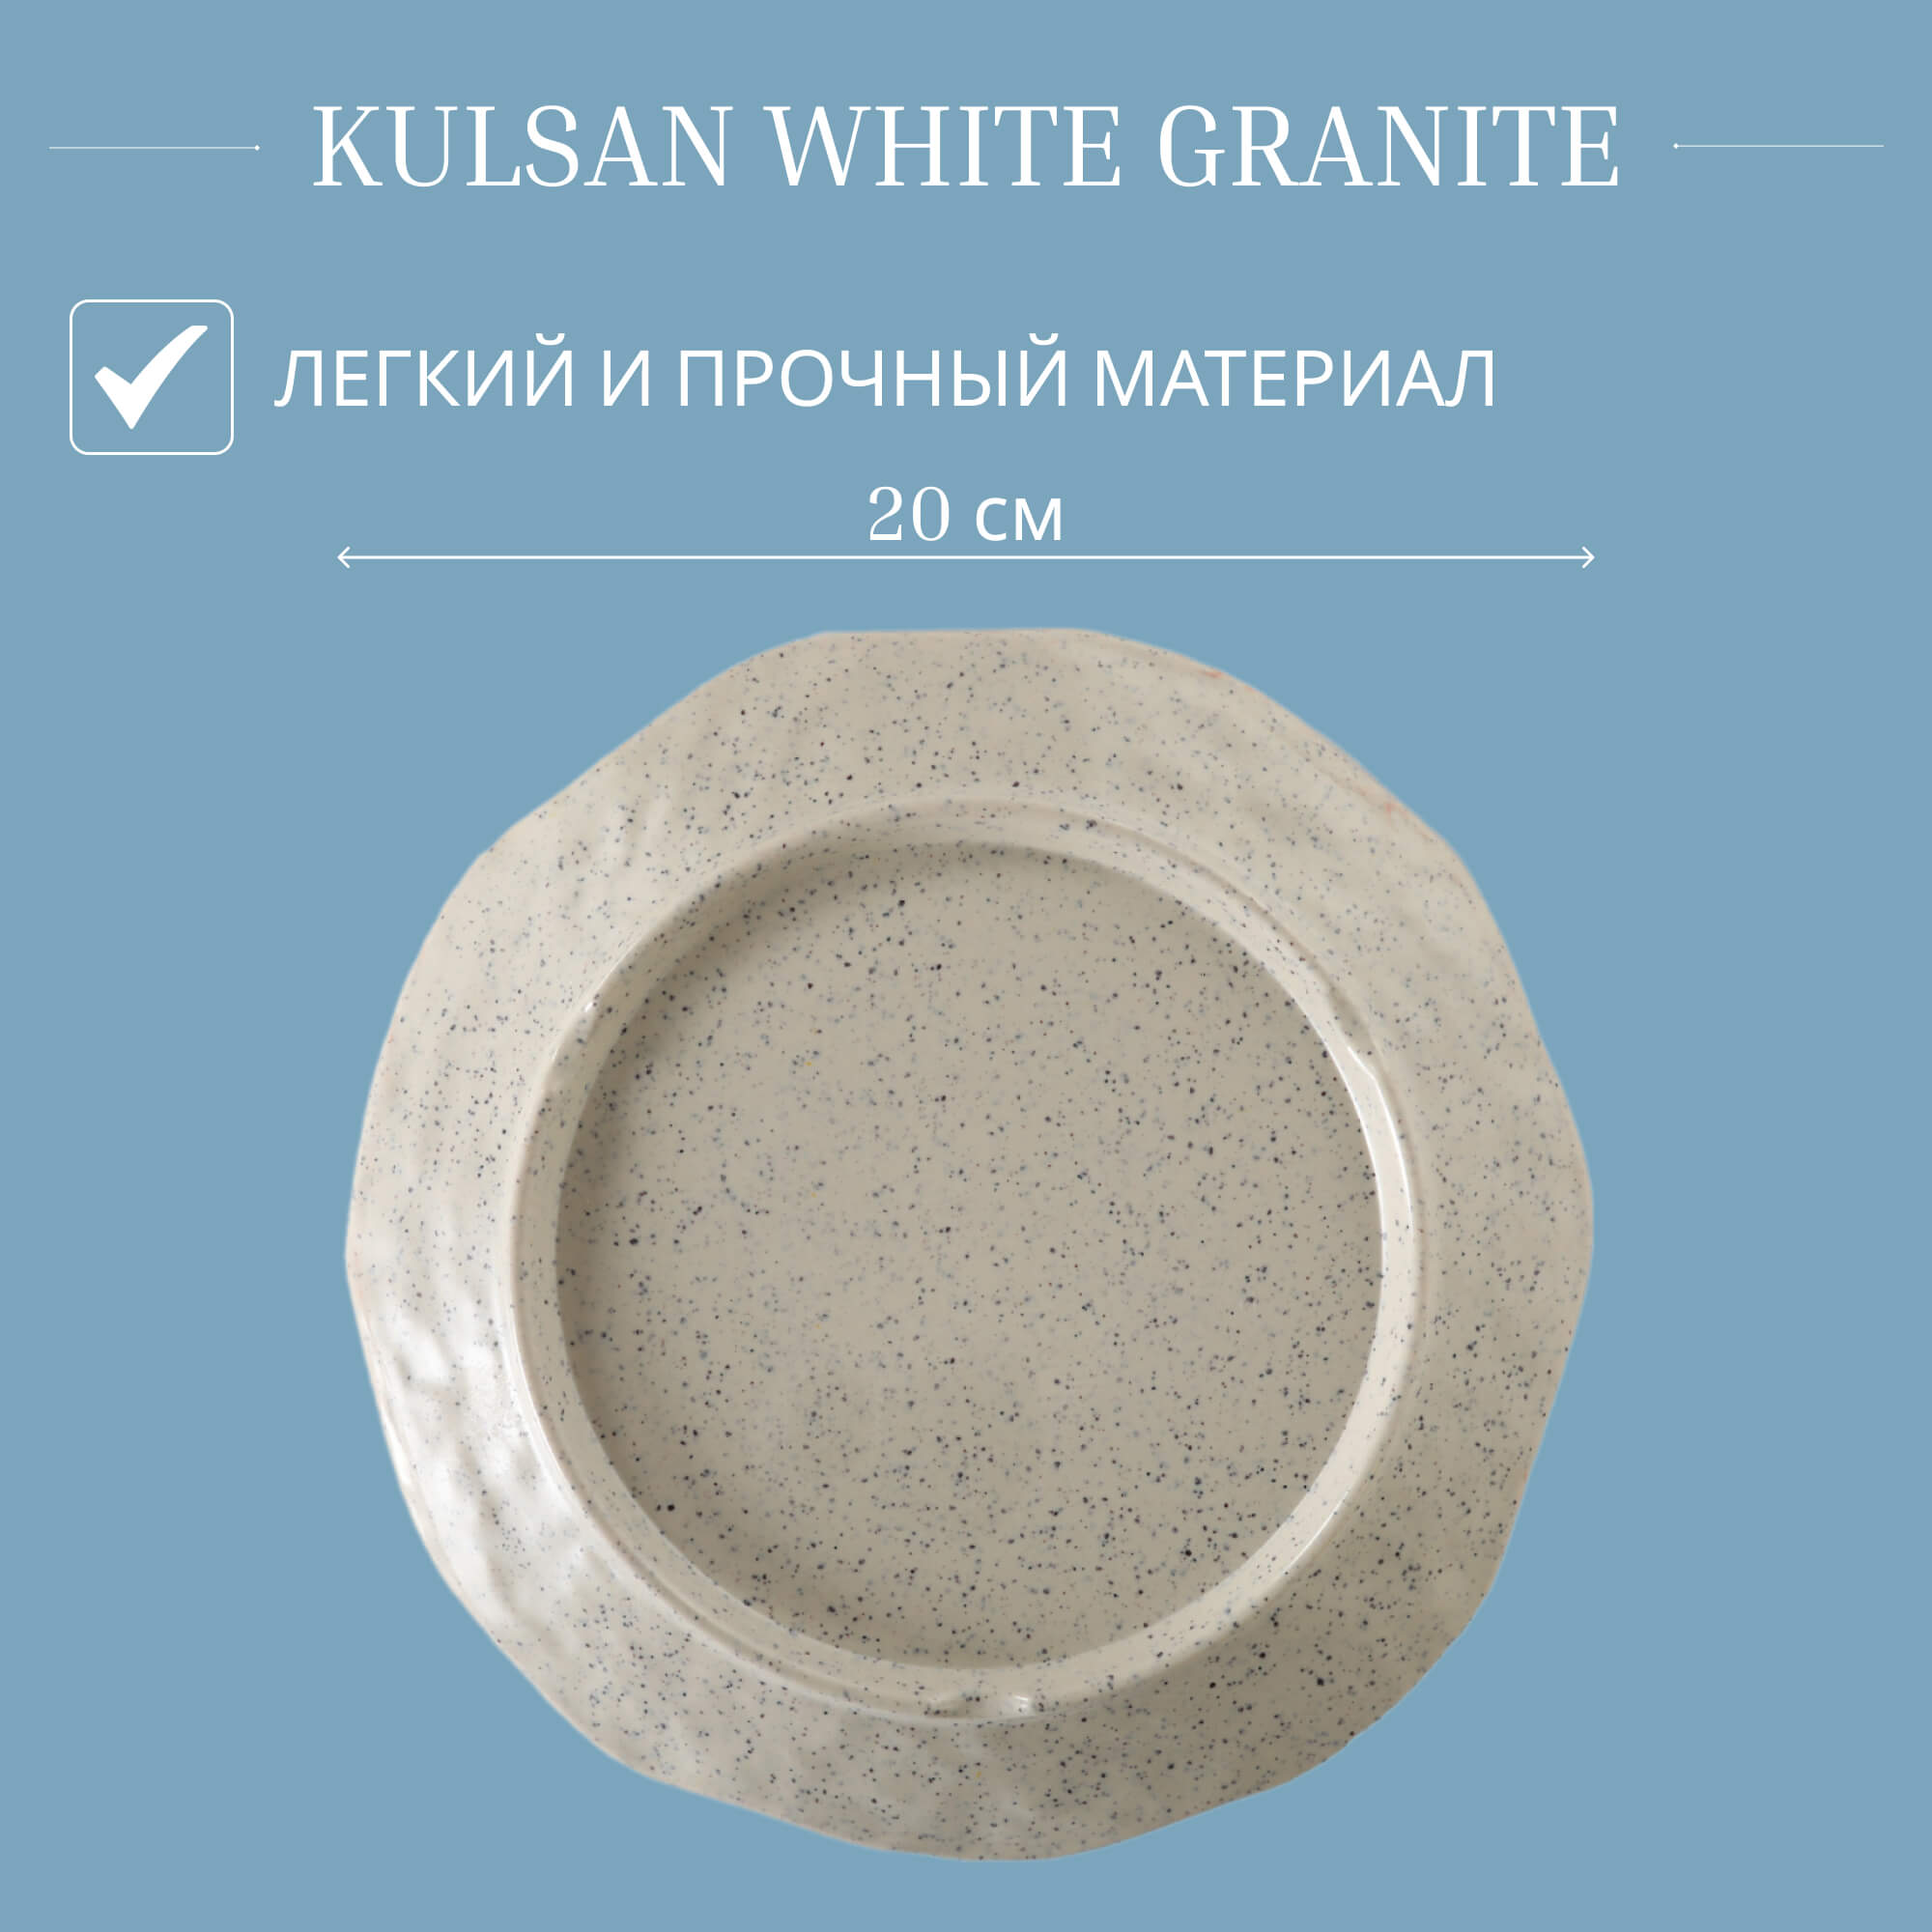 Блюдо Kulsan White granite круглое 20 см, цвет слоновая кость - фото 4